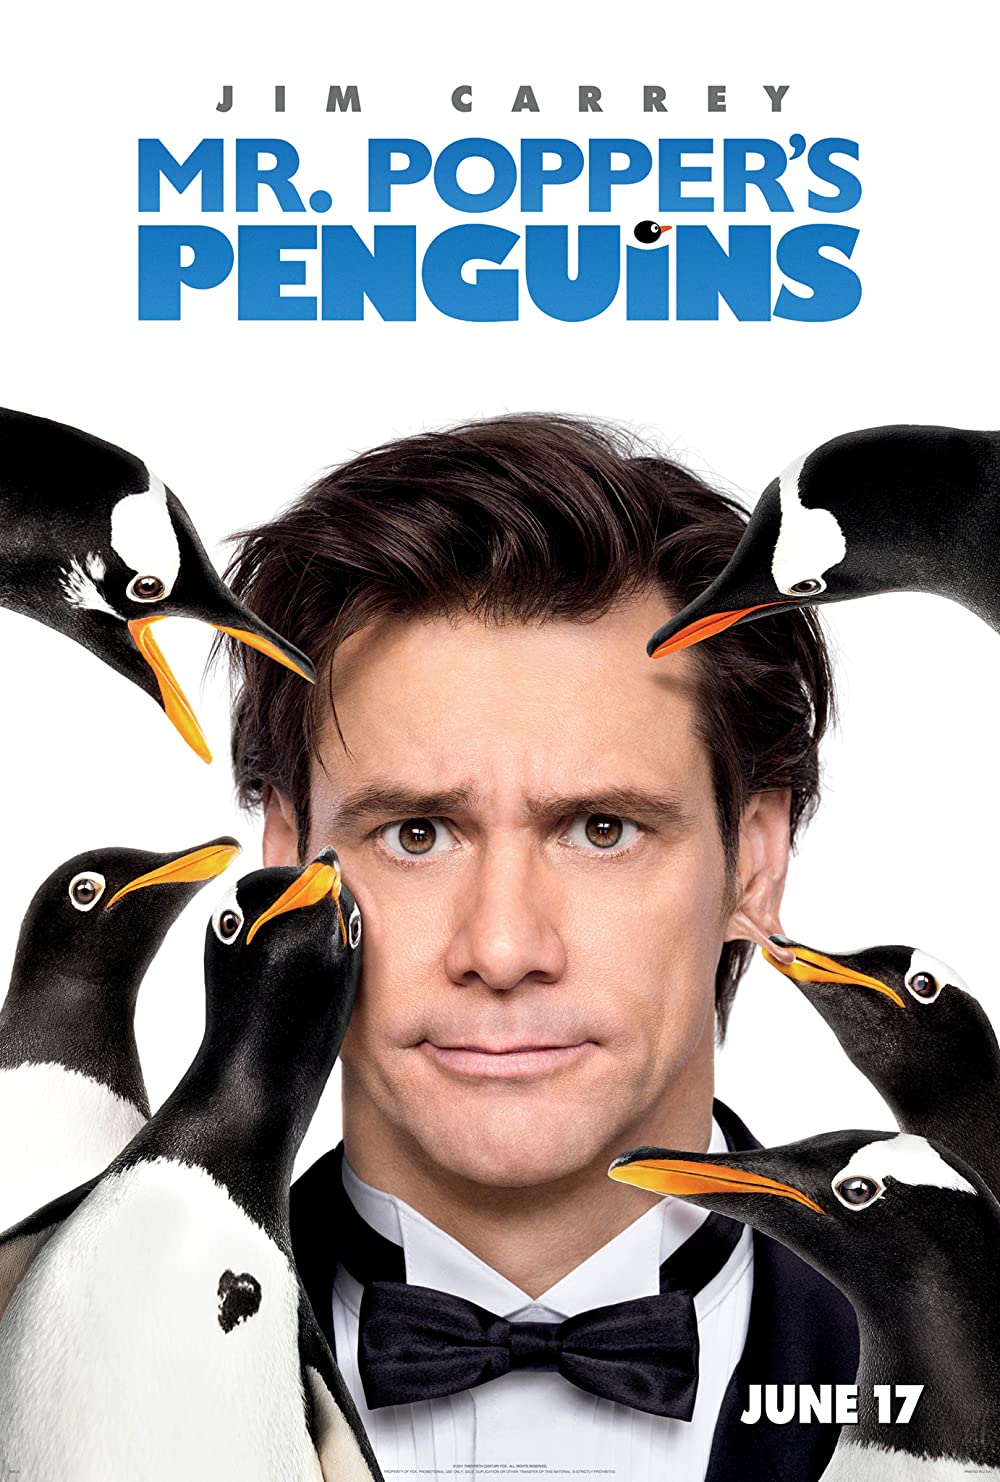 Filmbeschreibung zu Mr. Poppers Penguins